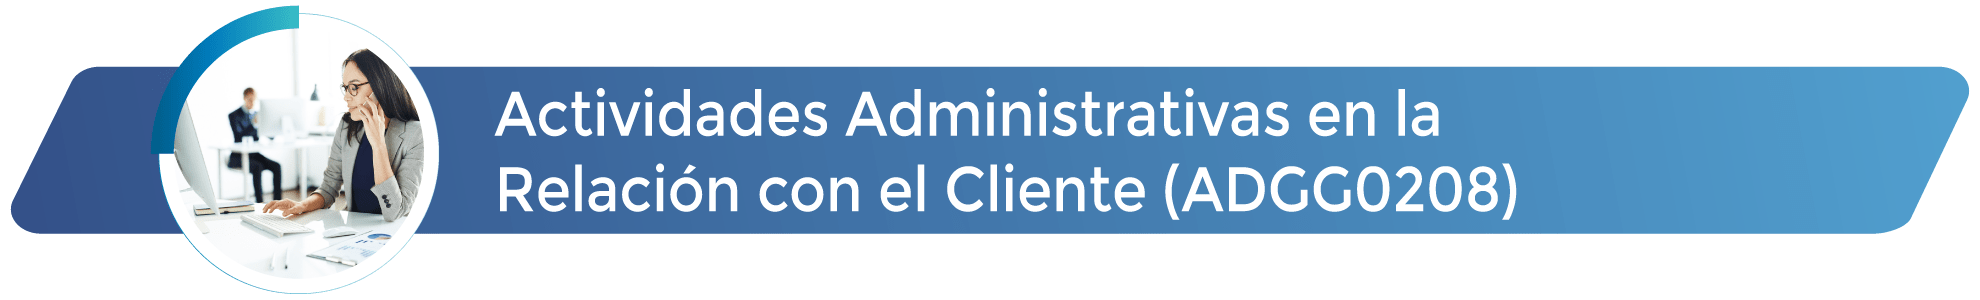 ADGG0208 - Actividades Administrativas en la Relación con el Cliente